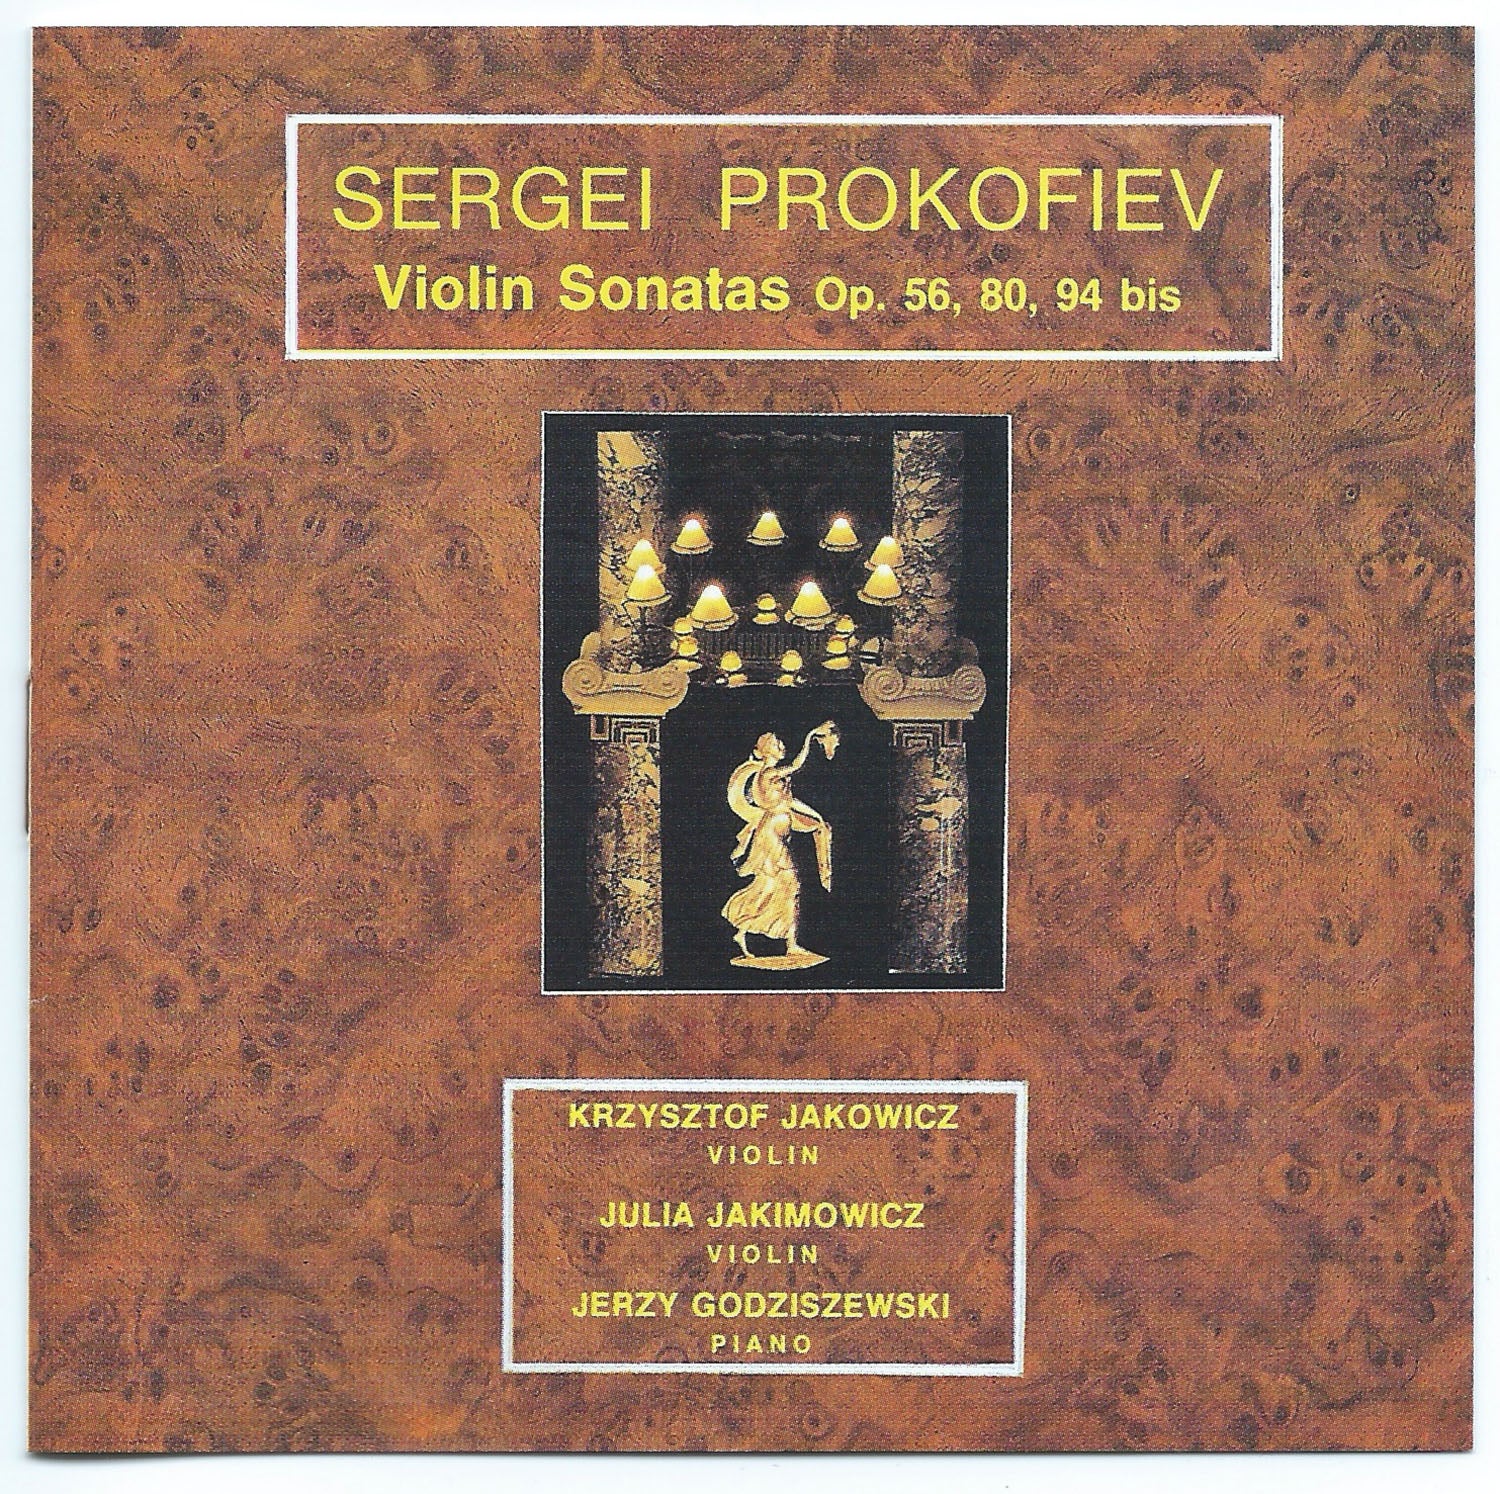 Sergei Prokofiev - Violin Sonatas op. 56, 80, 94 bis